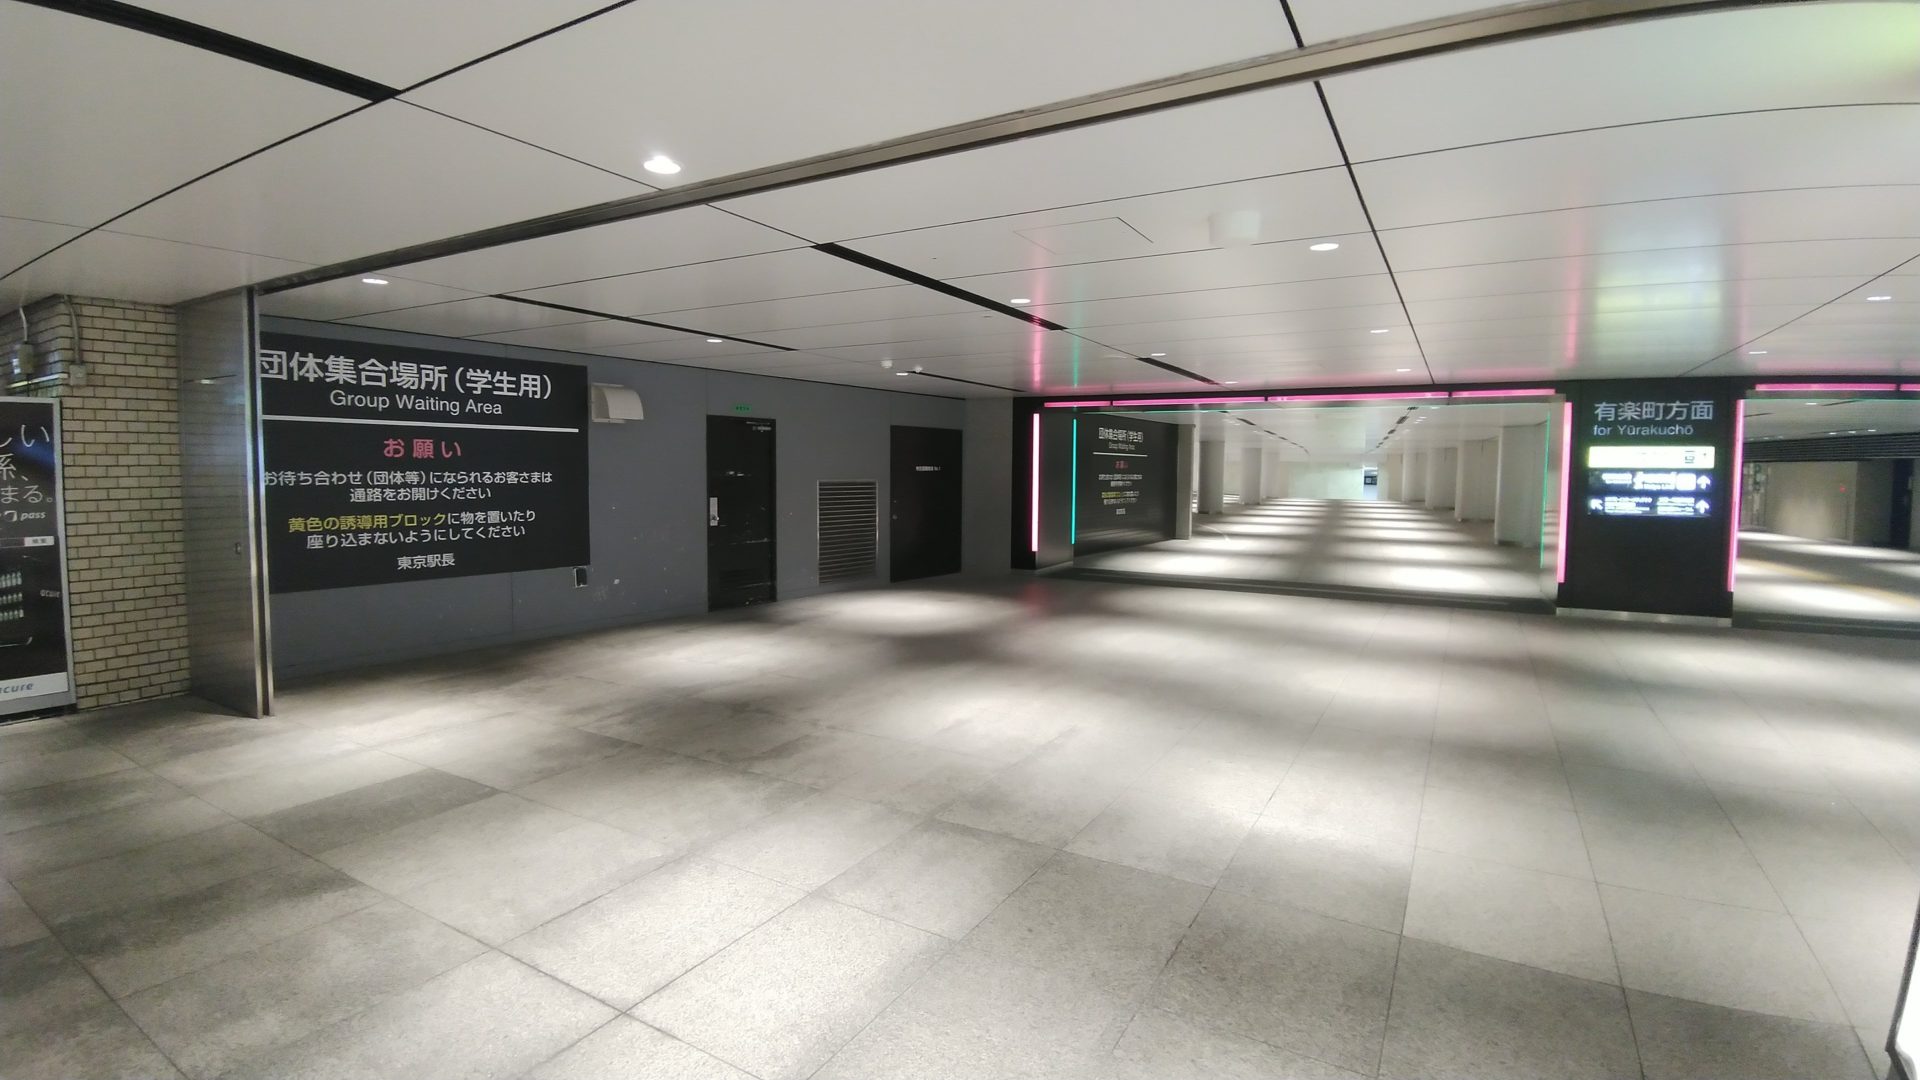 もう迷わない 東京駅の改札口を徹底解説